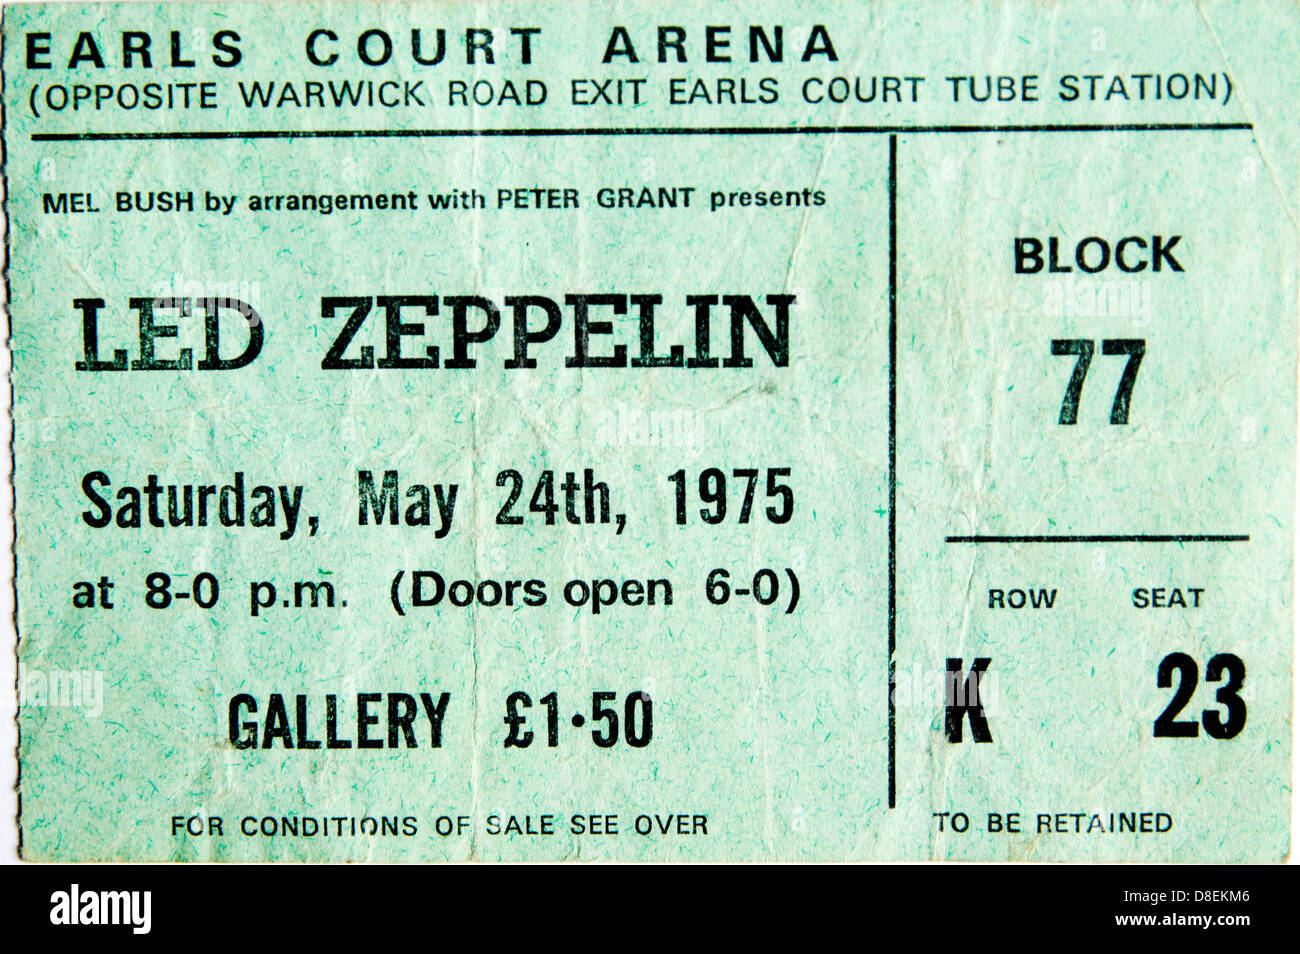 Concierto de Led Zeppelin vale desde 1975 gig en el Earls court arena de Londres Foto de stock